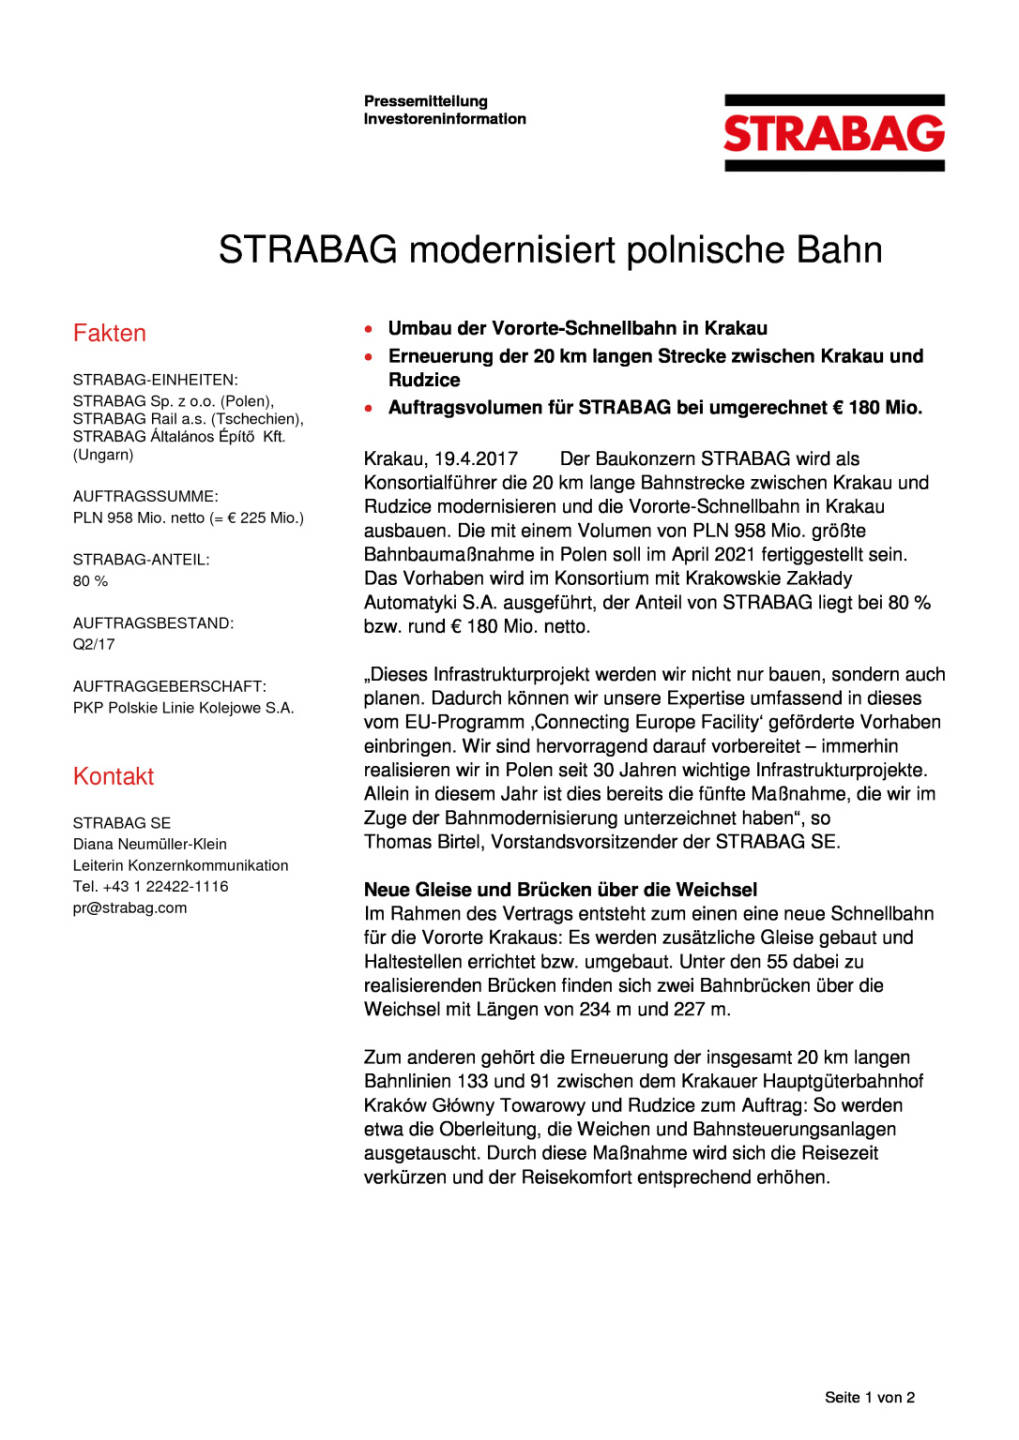 Strabag modernisiert polnische Bahn, Seite 1/2, komplettes Dokument unter http://boerse-social.com/static/uploads/file_2215_strabag_modernisiert_polnische_bahn.pdf